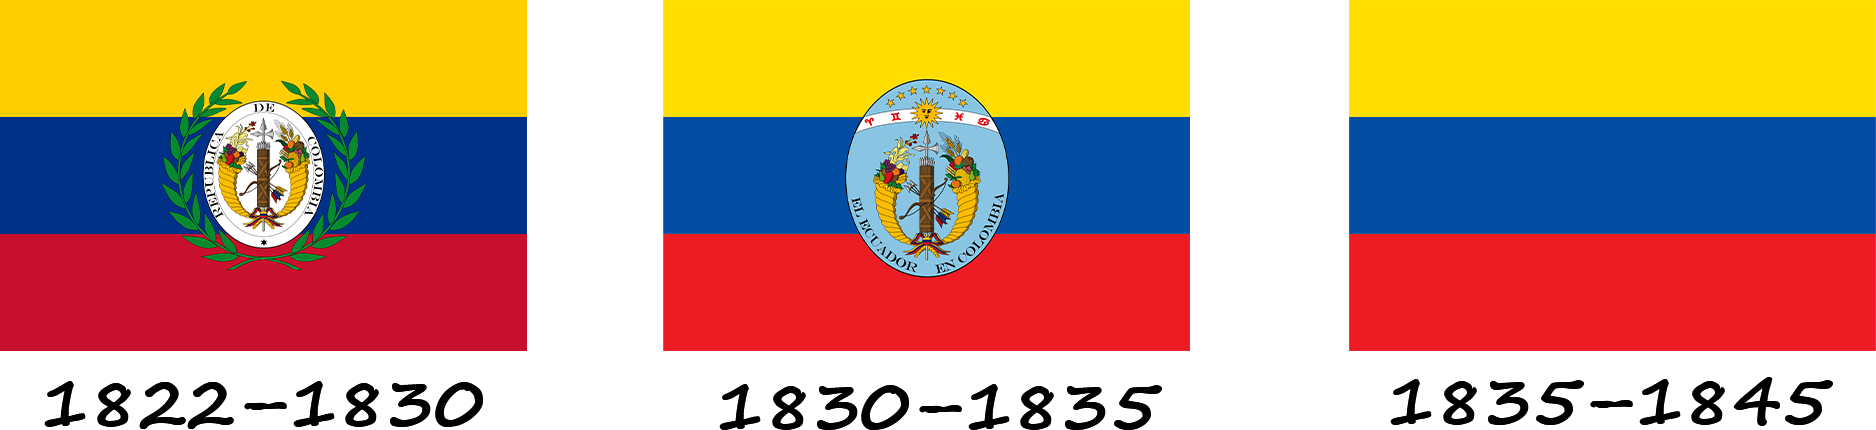 History of the flag of Ecuador